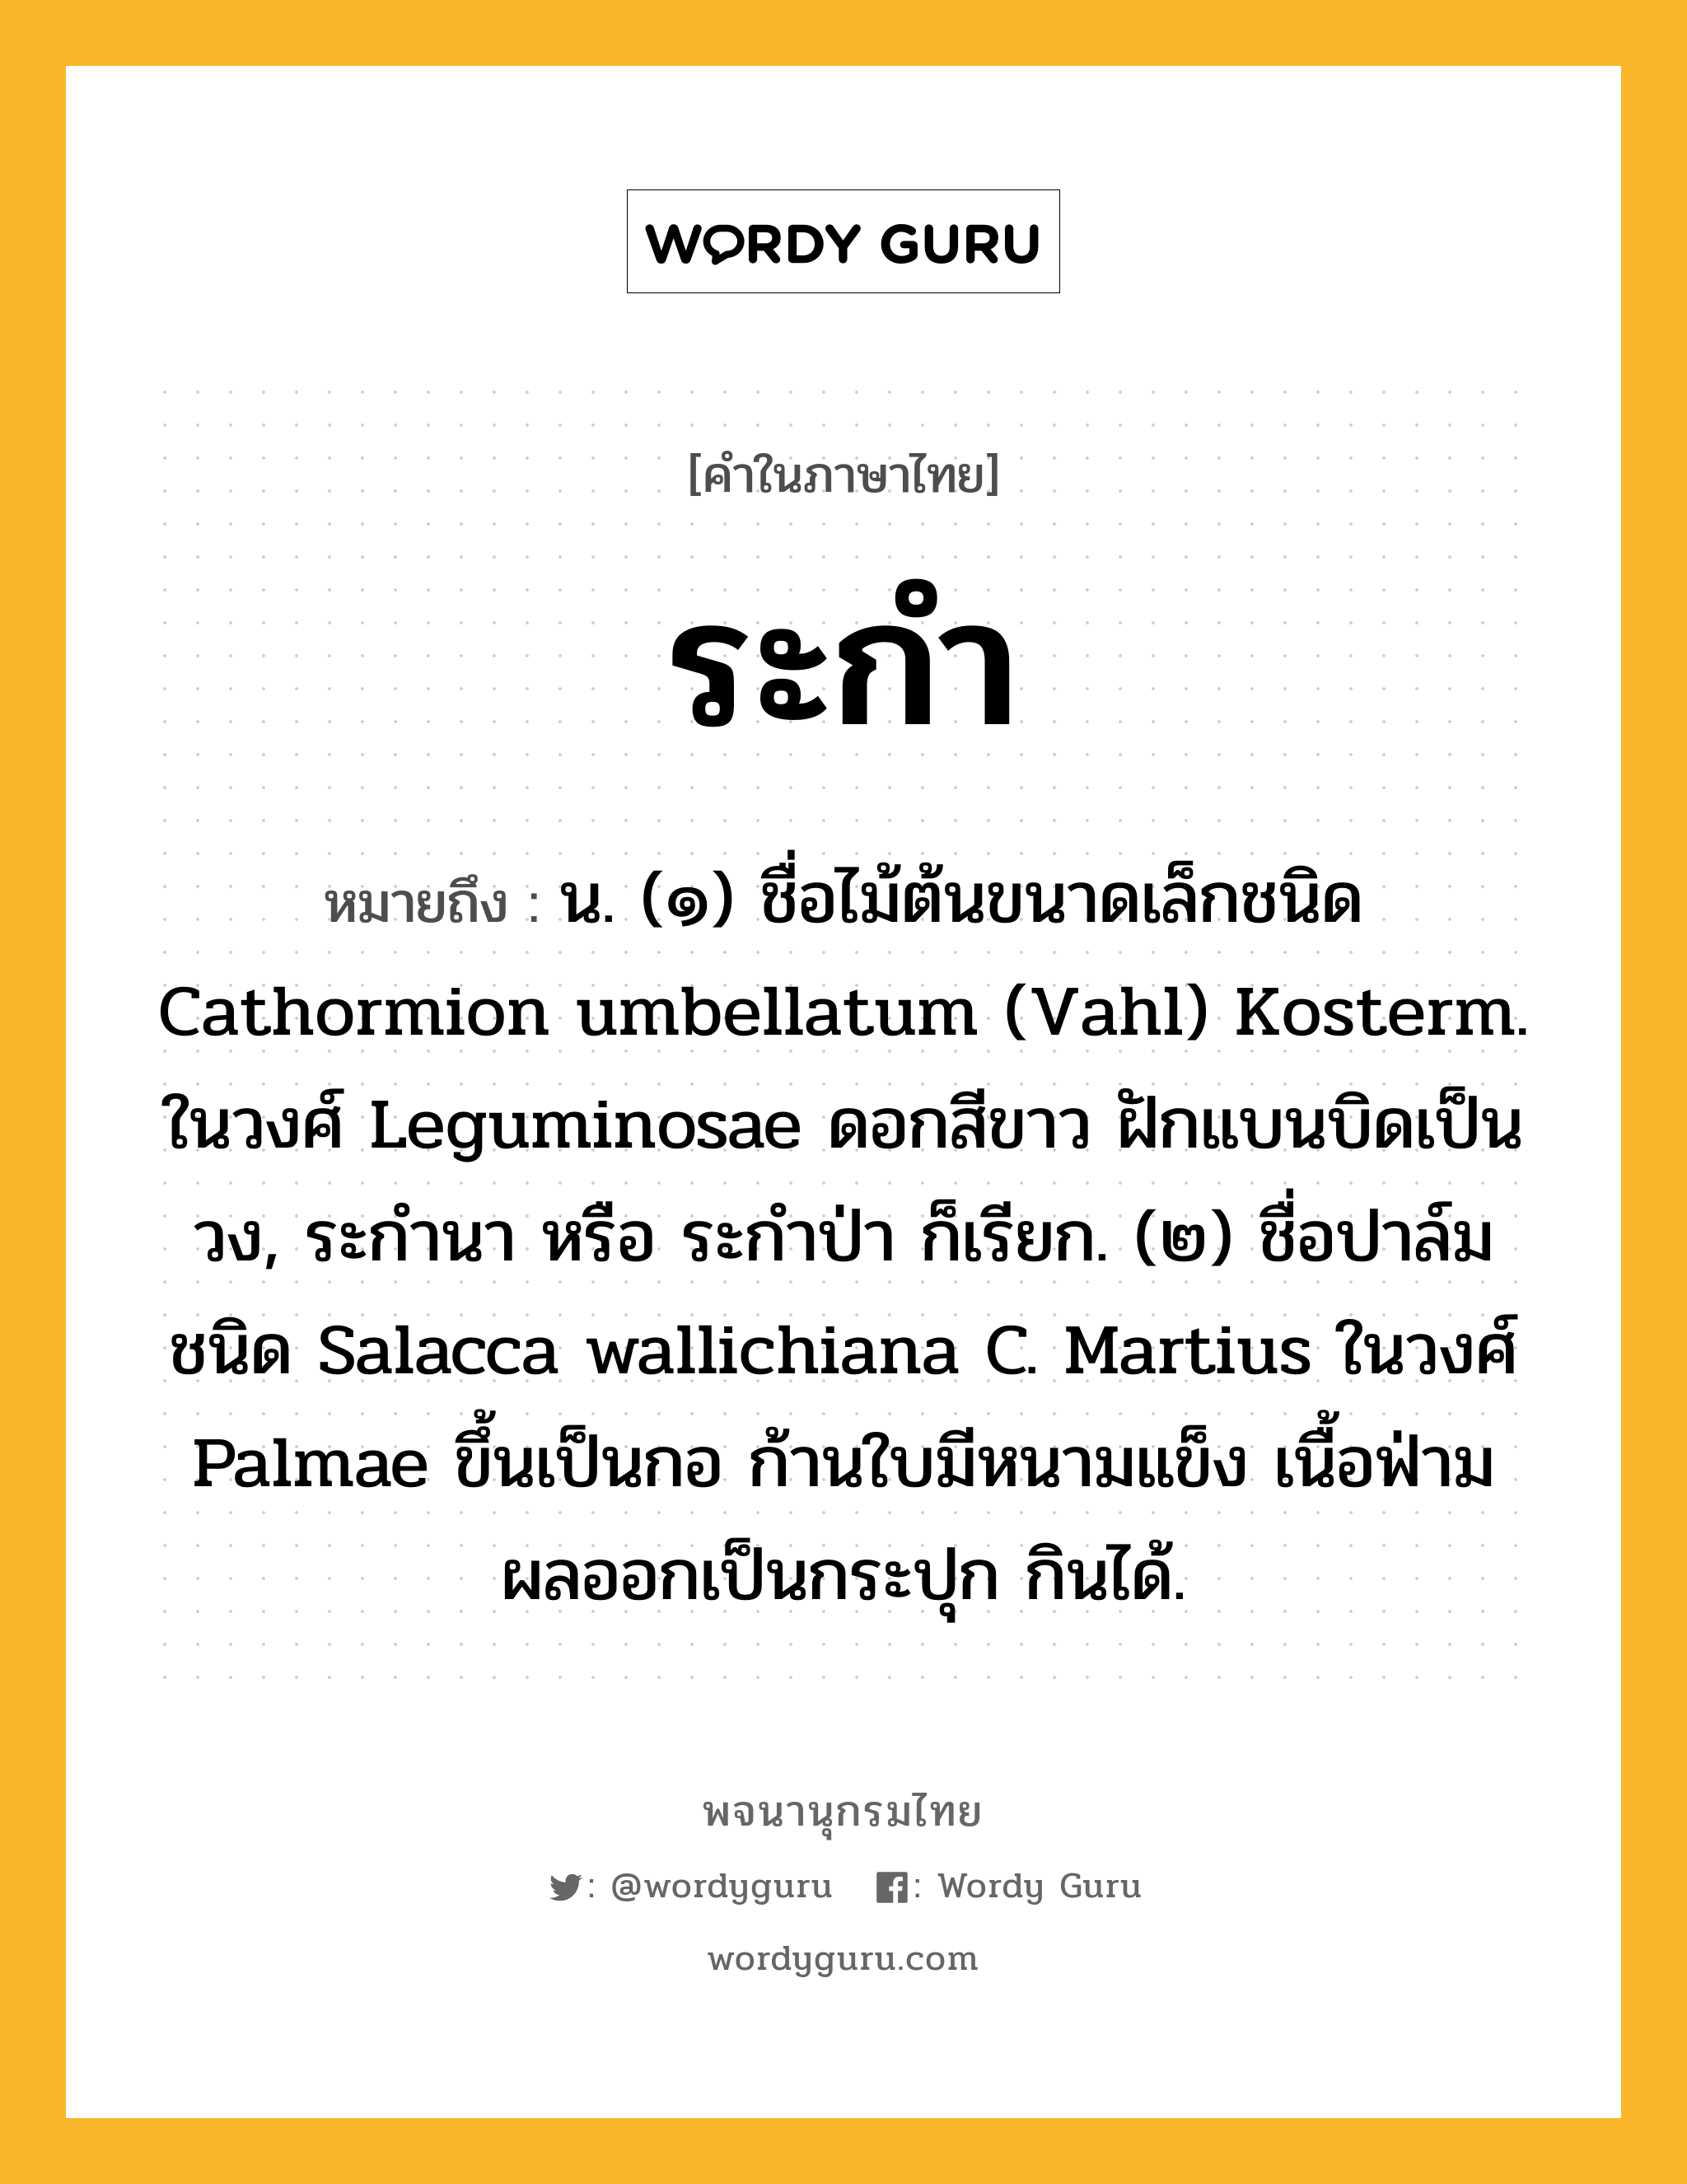 ระกำ หมายถึงอะไร?, คำในภาษาไทย ระกำ หมายถึง น. (๑) ชื่อไม้ต้นขนาดเล็กชนิด Cathormion umbellatum (Vahl) Kosterm. ในวงศ์ Leguminosae ดอกสีขาว ฝักแบนบิดเป็นวง, ระกํานา หรือ ระกําป่า ก็เรียก. (๒) ชื่อปาล์มชนิด Salacca wallichiana C. Martius ในวงศ์ Palmae ขึ้นเป็นกอ ก้านใบมีหนามแข็ง เนื้อฟ่าม ผลออกเป็นกระปุก กินได้.